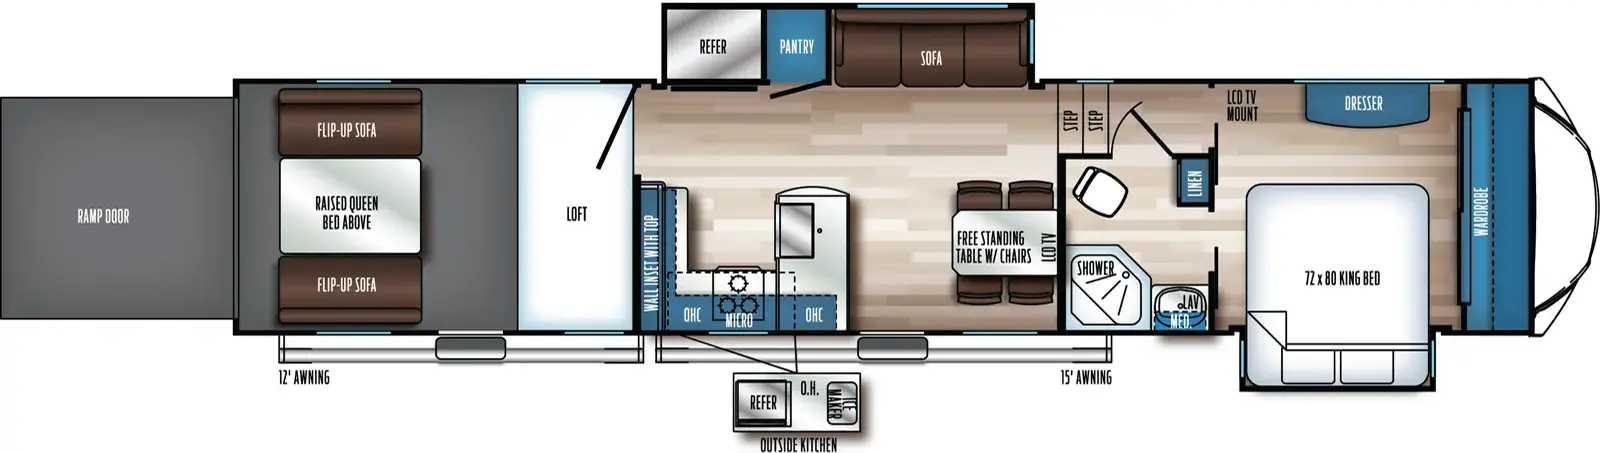 373BS13 Floorplan Image